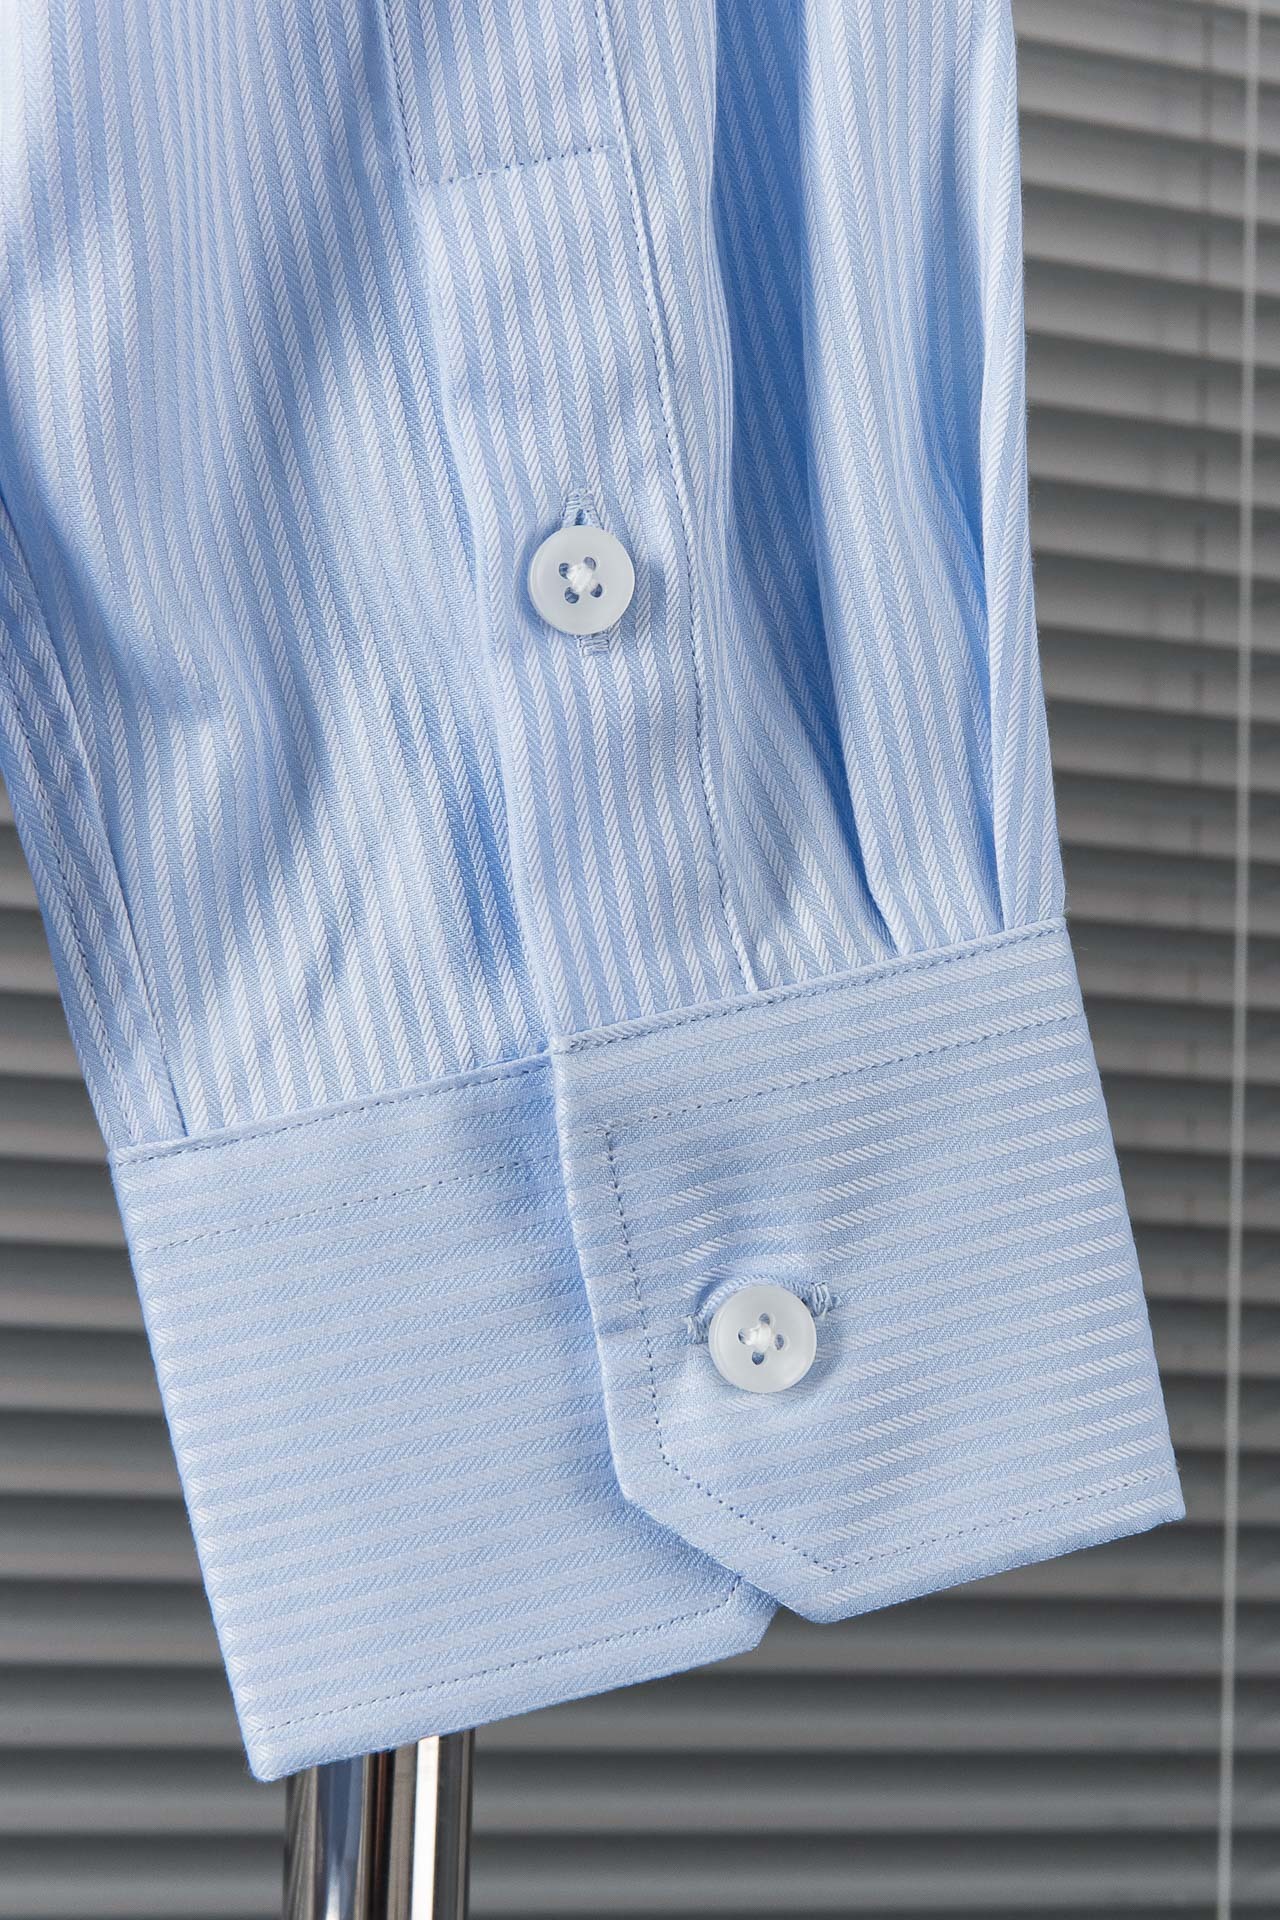 New#！！！杰尼亚ZEGNA高品质的珍藏级进口高织棉男士条纹长袖衬衫!24FW秋冬新款高品质的奢品者首